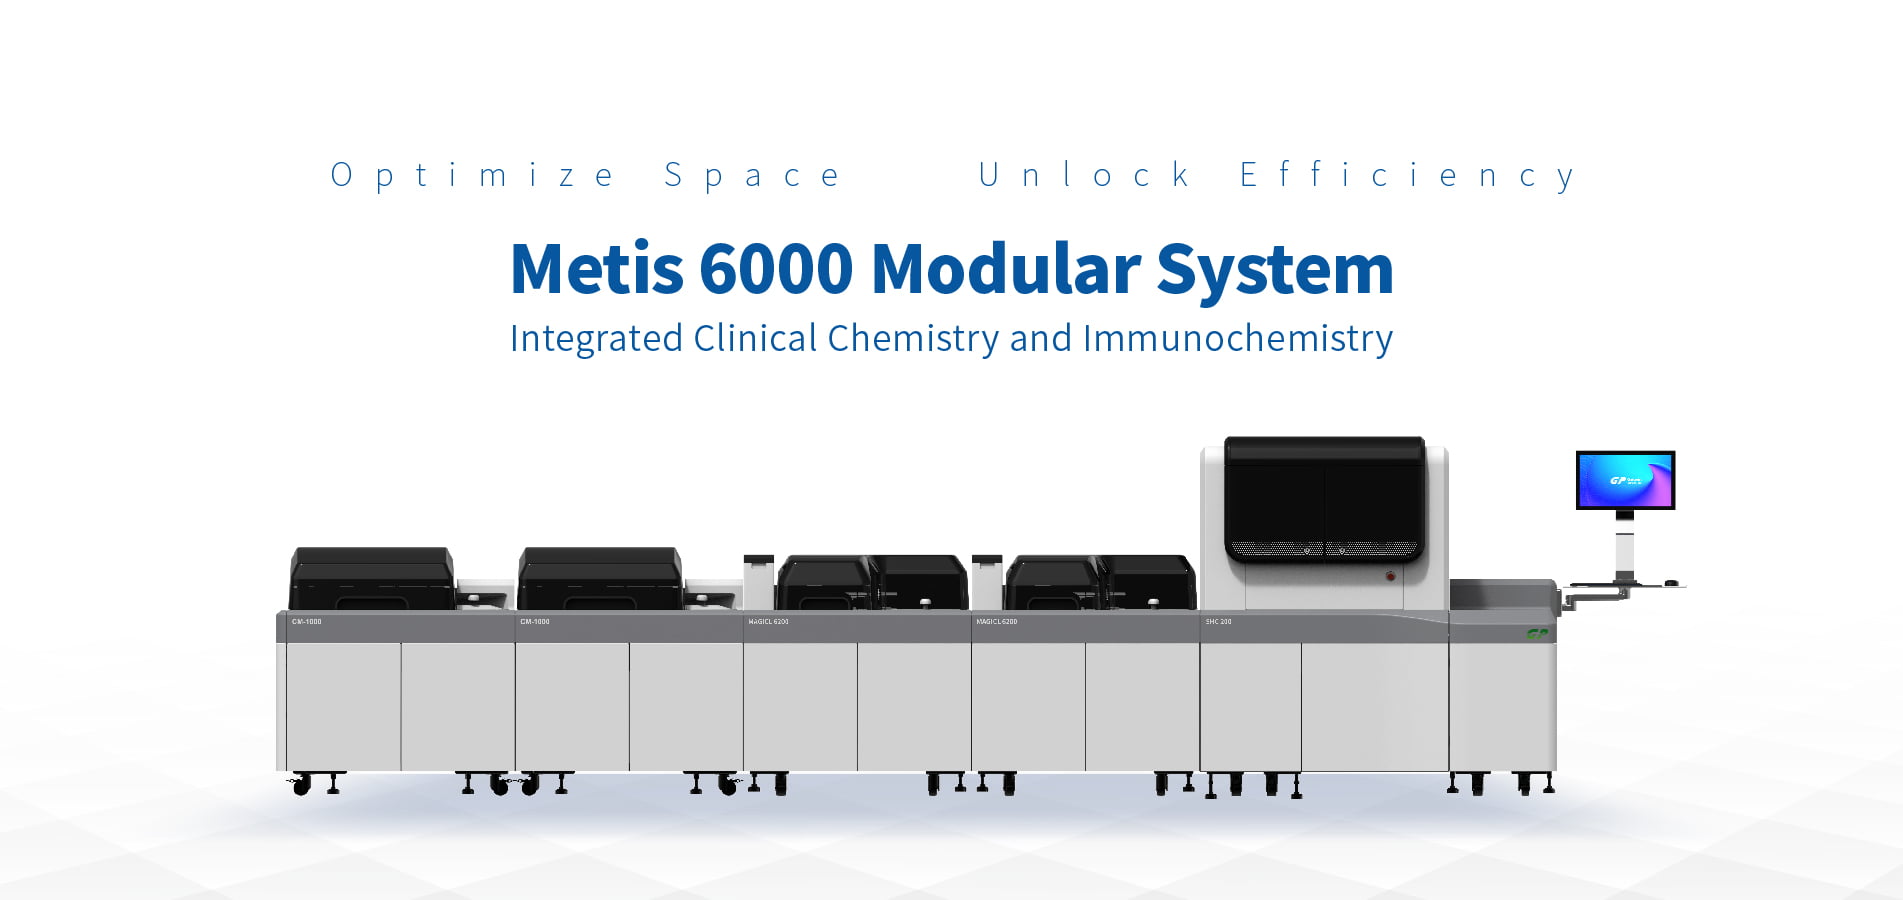 Делаем модульную систему доступной для большего числа лабораторий — Metis 6000 удовлетворит ваши потребности